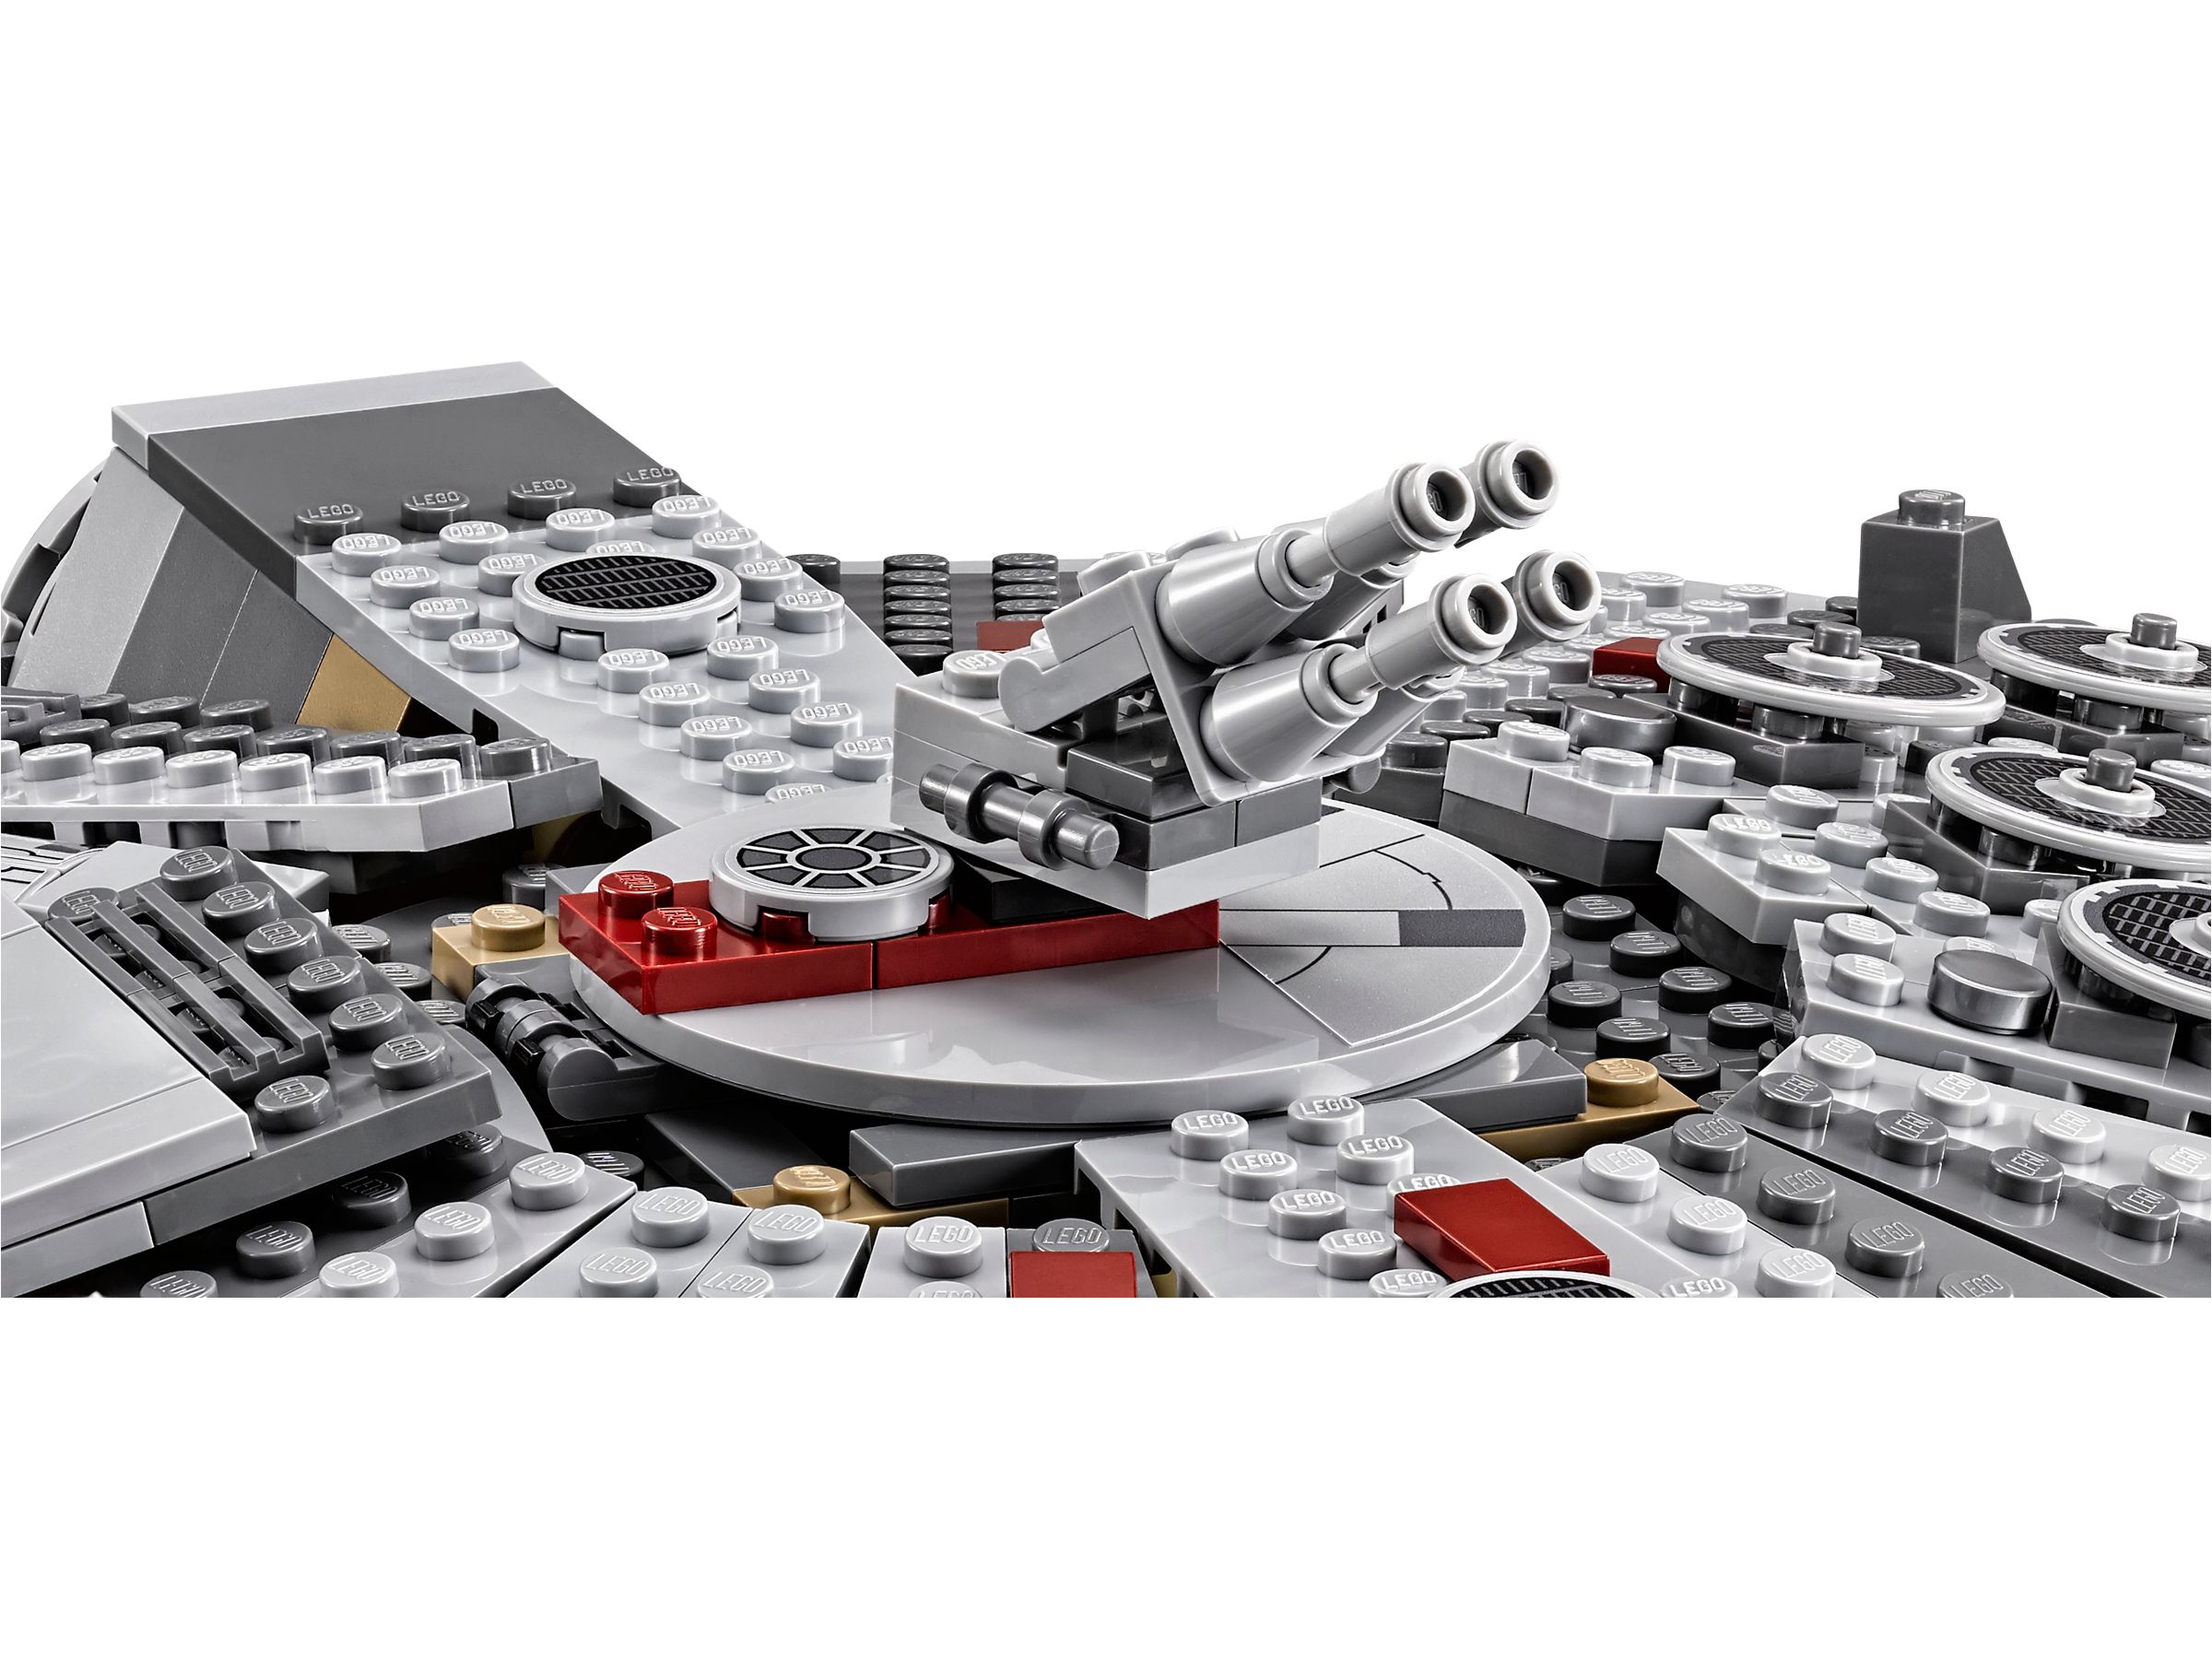 LEGO Star Wars 75105 Millennium Falcon™ LEGO_75105_alt5.jpg